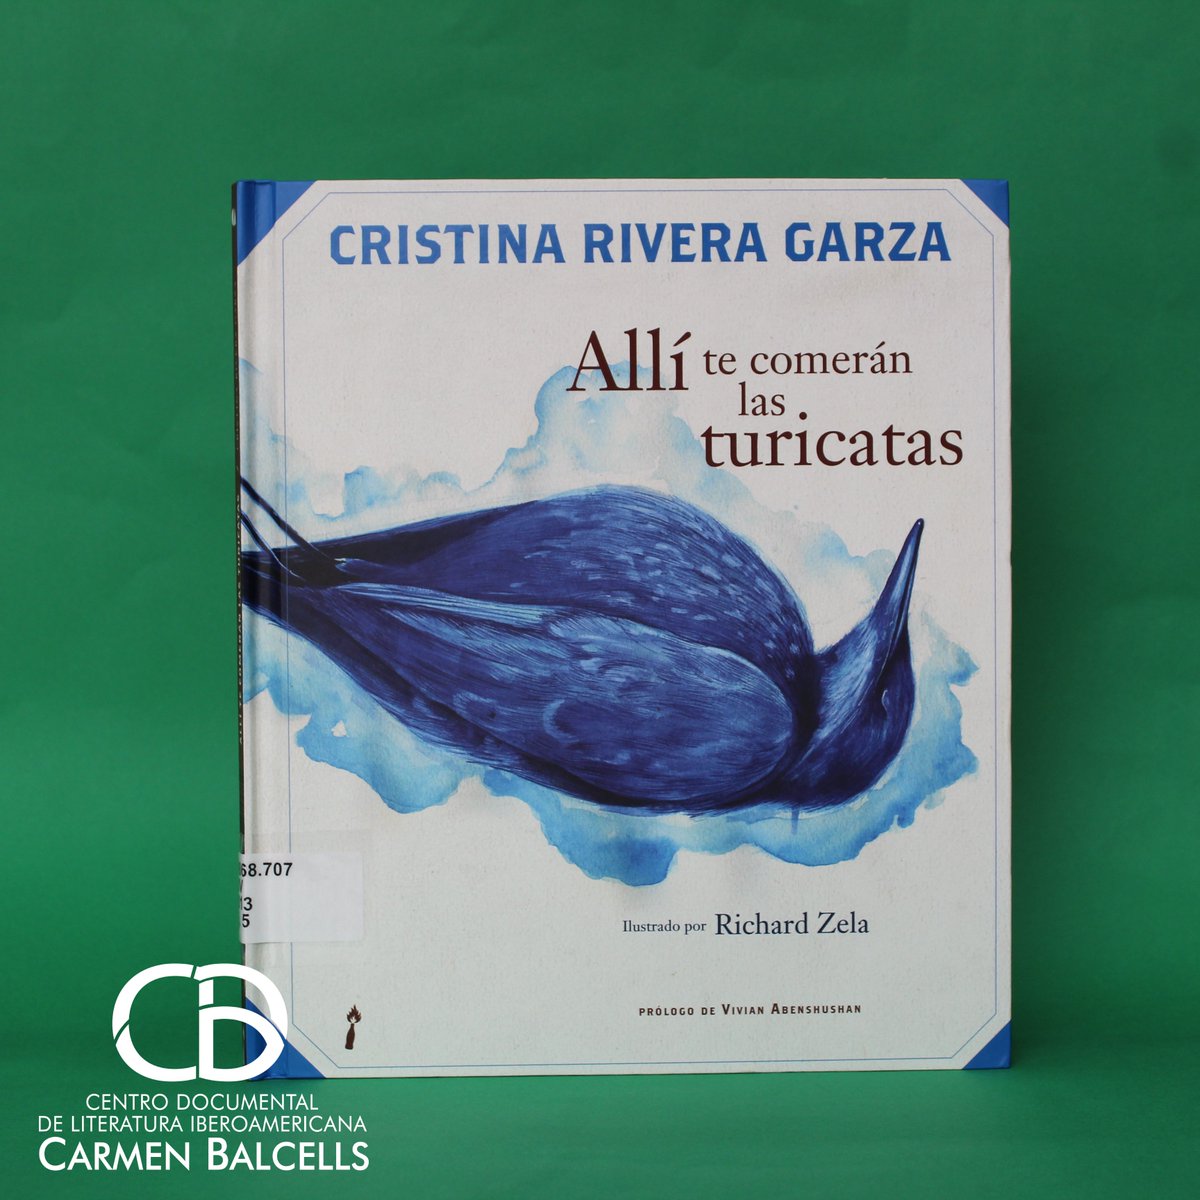 'Allí te comerán las turicatas', de Cristina Rivera Garza.
#LecturaCreativa #HistoriasIlustradas  #LibrosÁlbum  #CentroCarmenBalcells #CDCB #SiUBiUDG #ComunidadUDG #SomosLectores